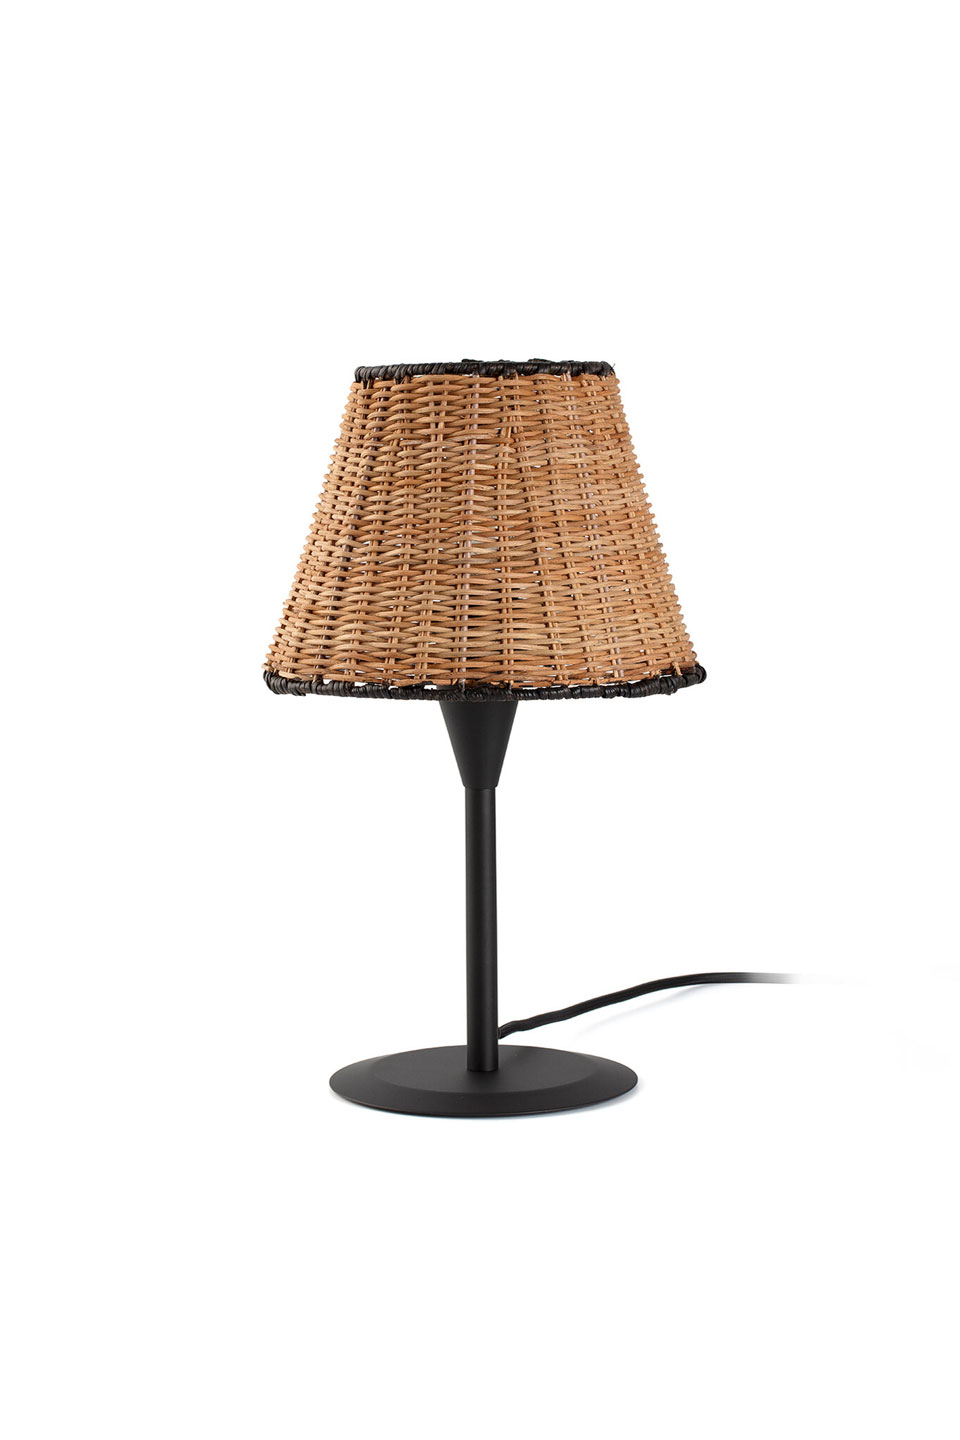 Small rattan table lamp Sumba. Faro. 